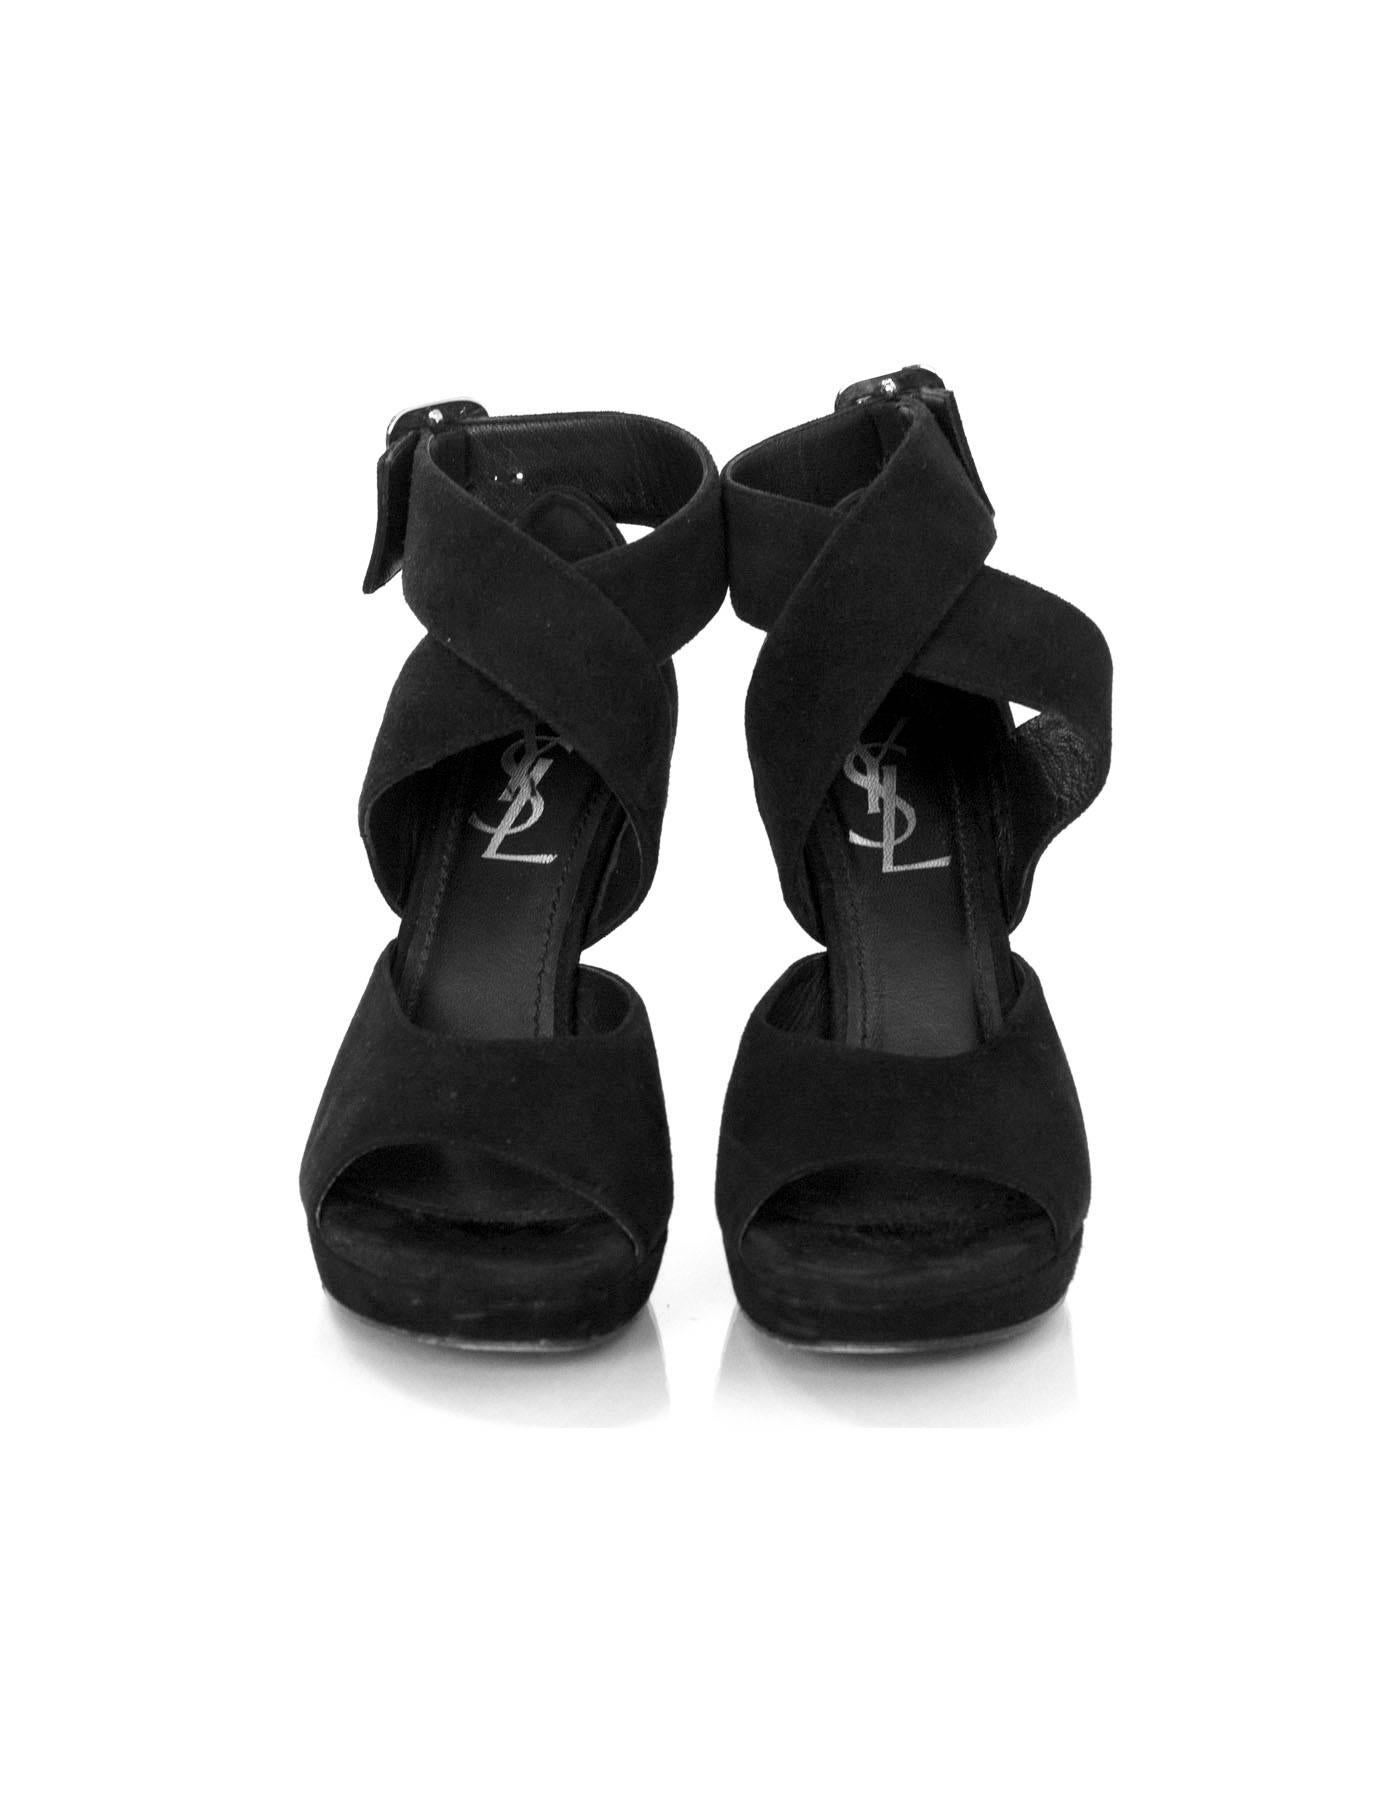 Women's Yves Saint Laurent Black Suede Sandals Sz 35